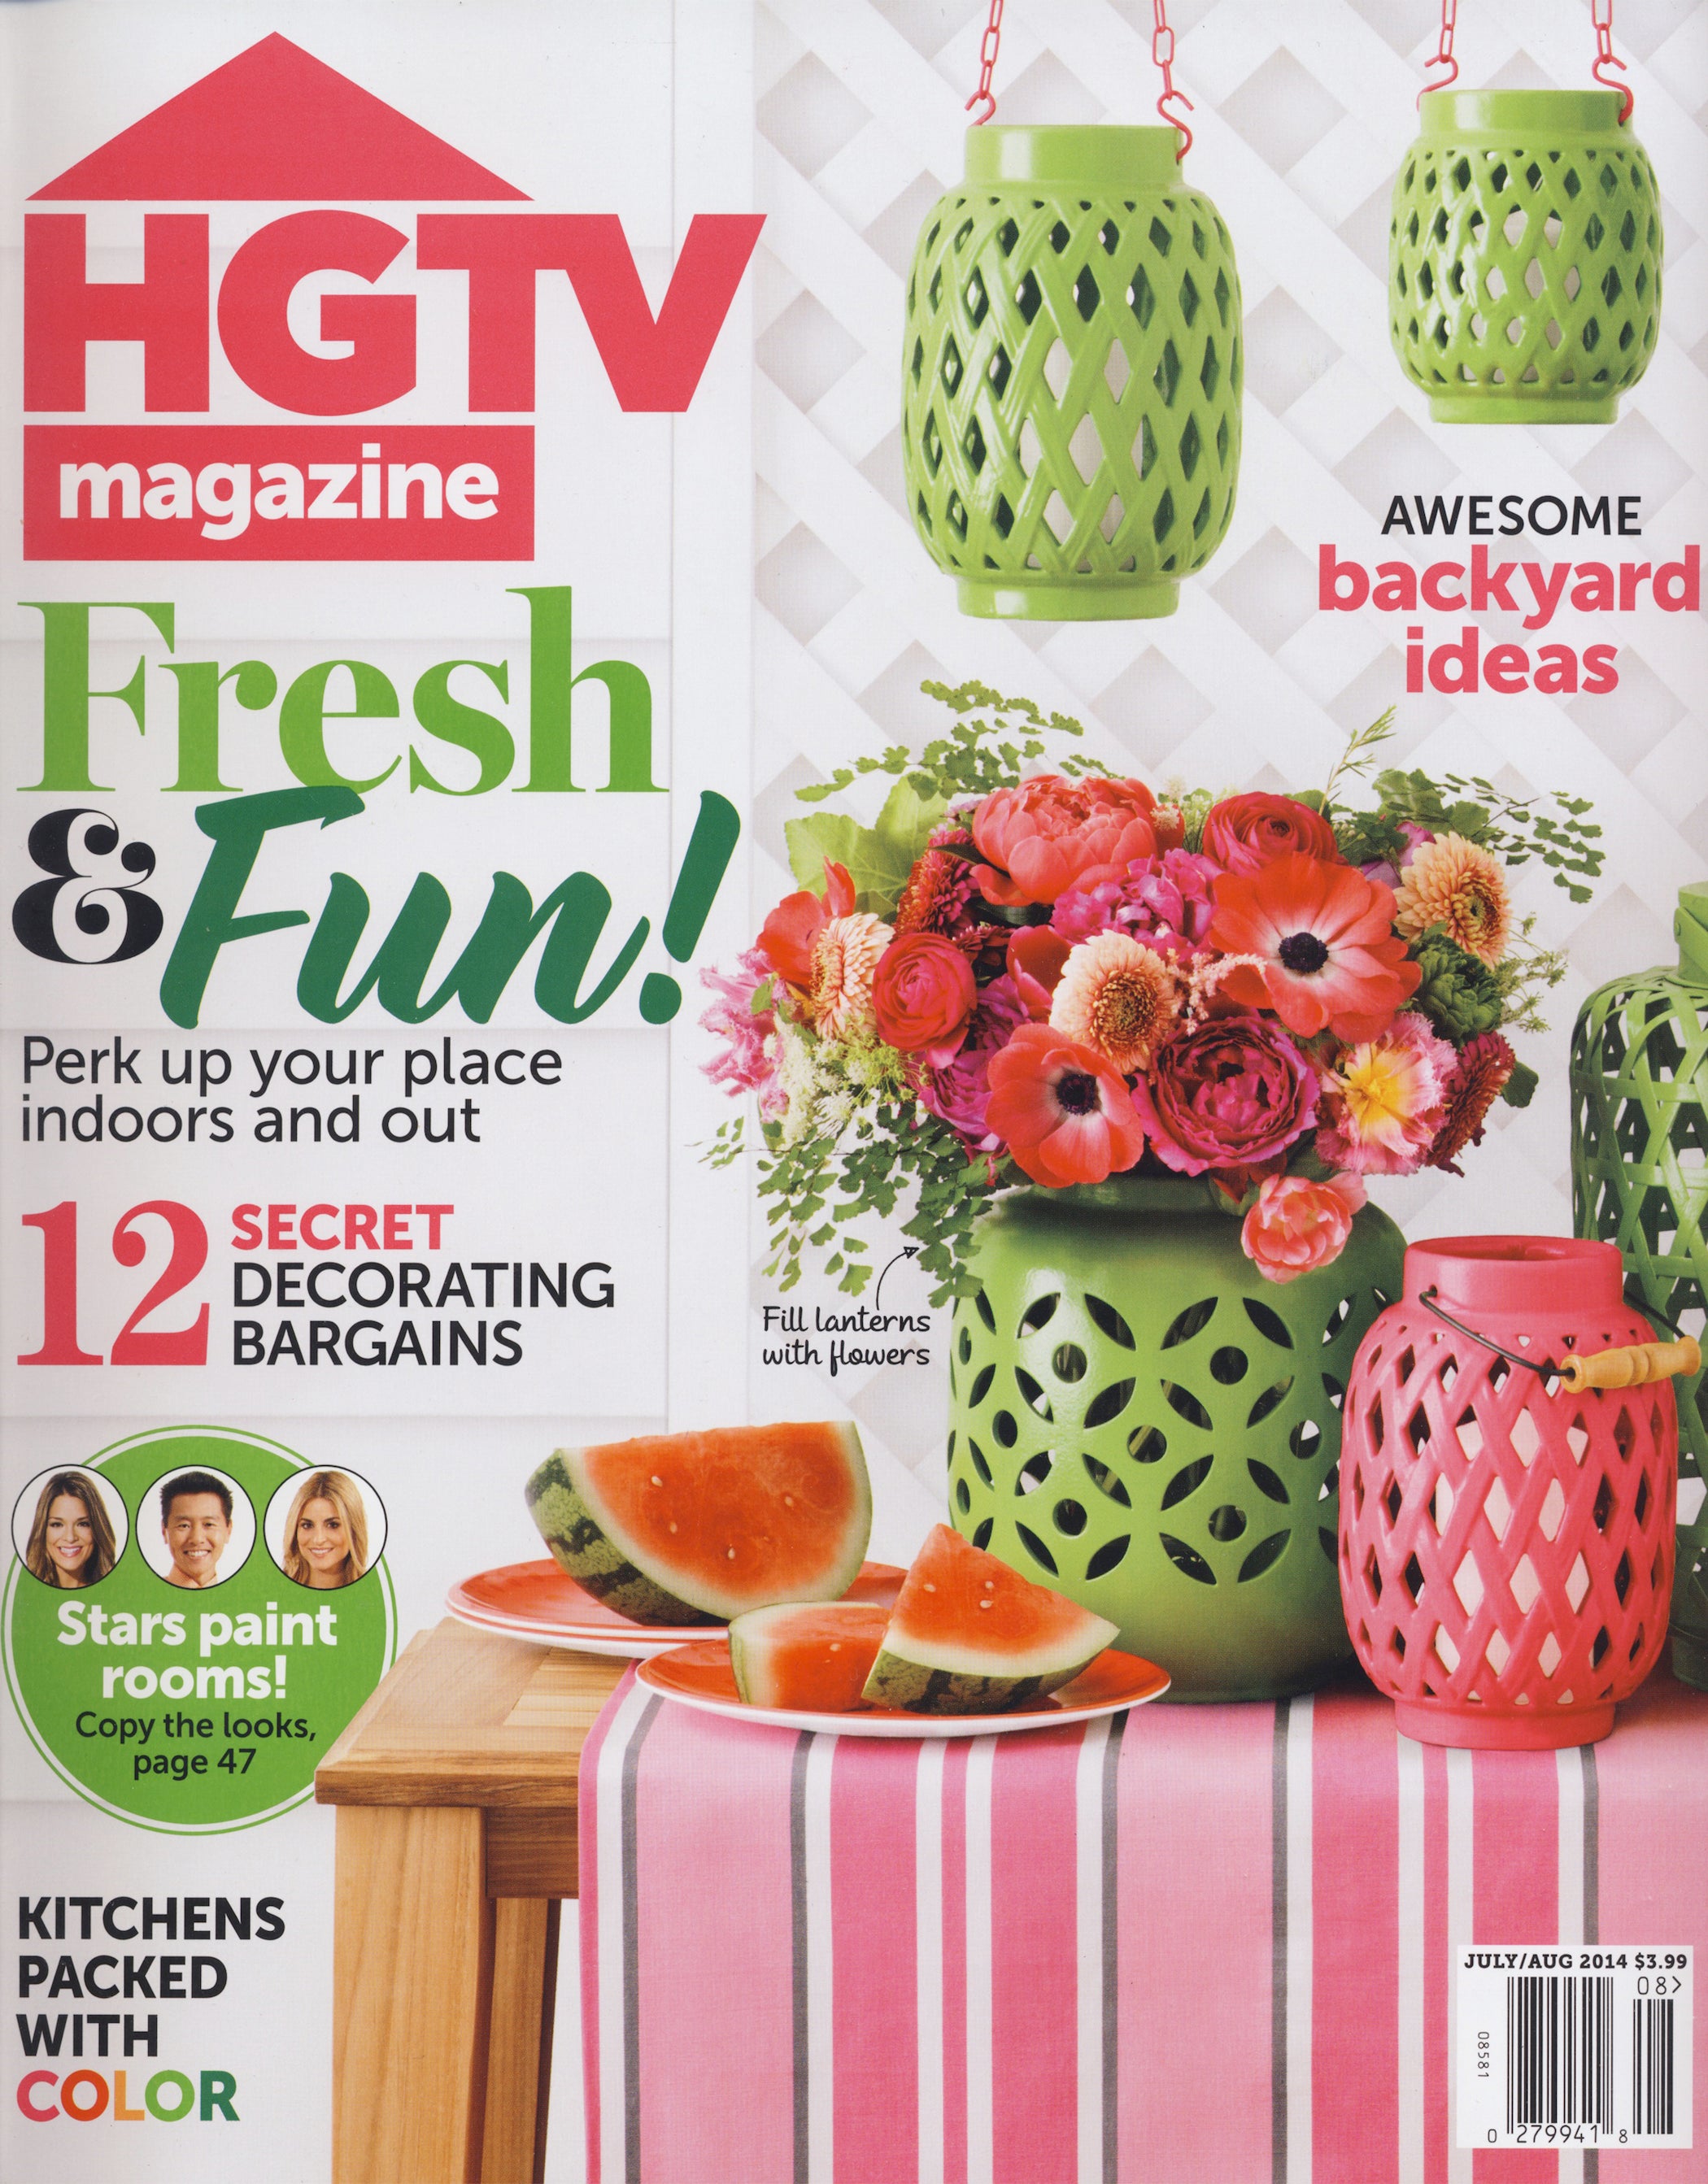 HGTV Magazine, July/Aug 2014